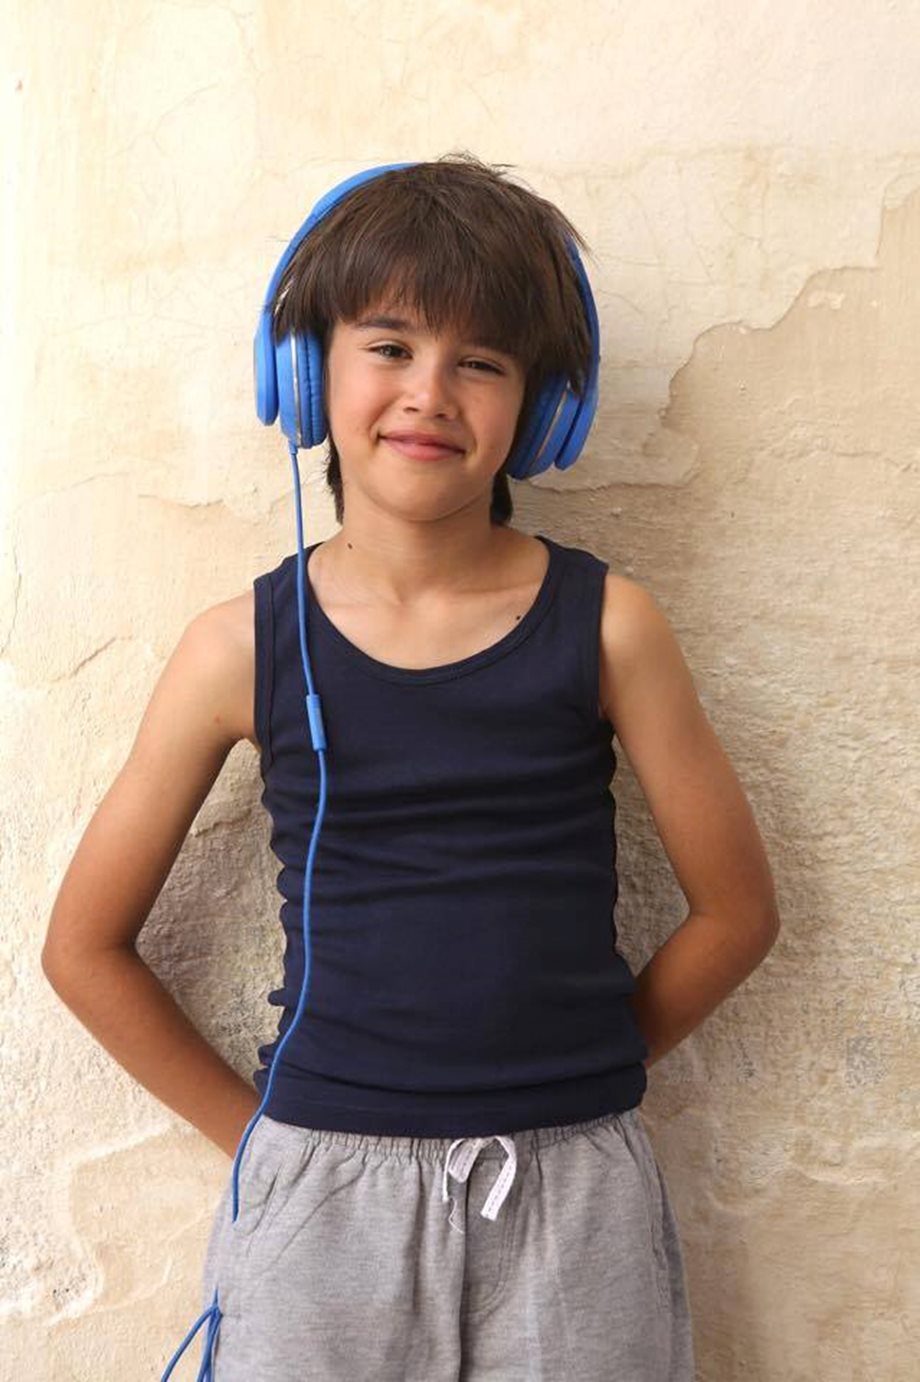 Η λέξη που δεν λες: Ποιος είναι ο 9χρονος Παυλής που μας έχει "κλέψει" την καρδιά